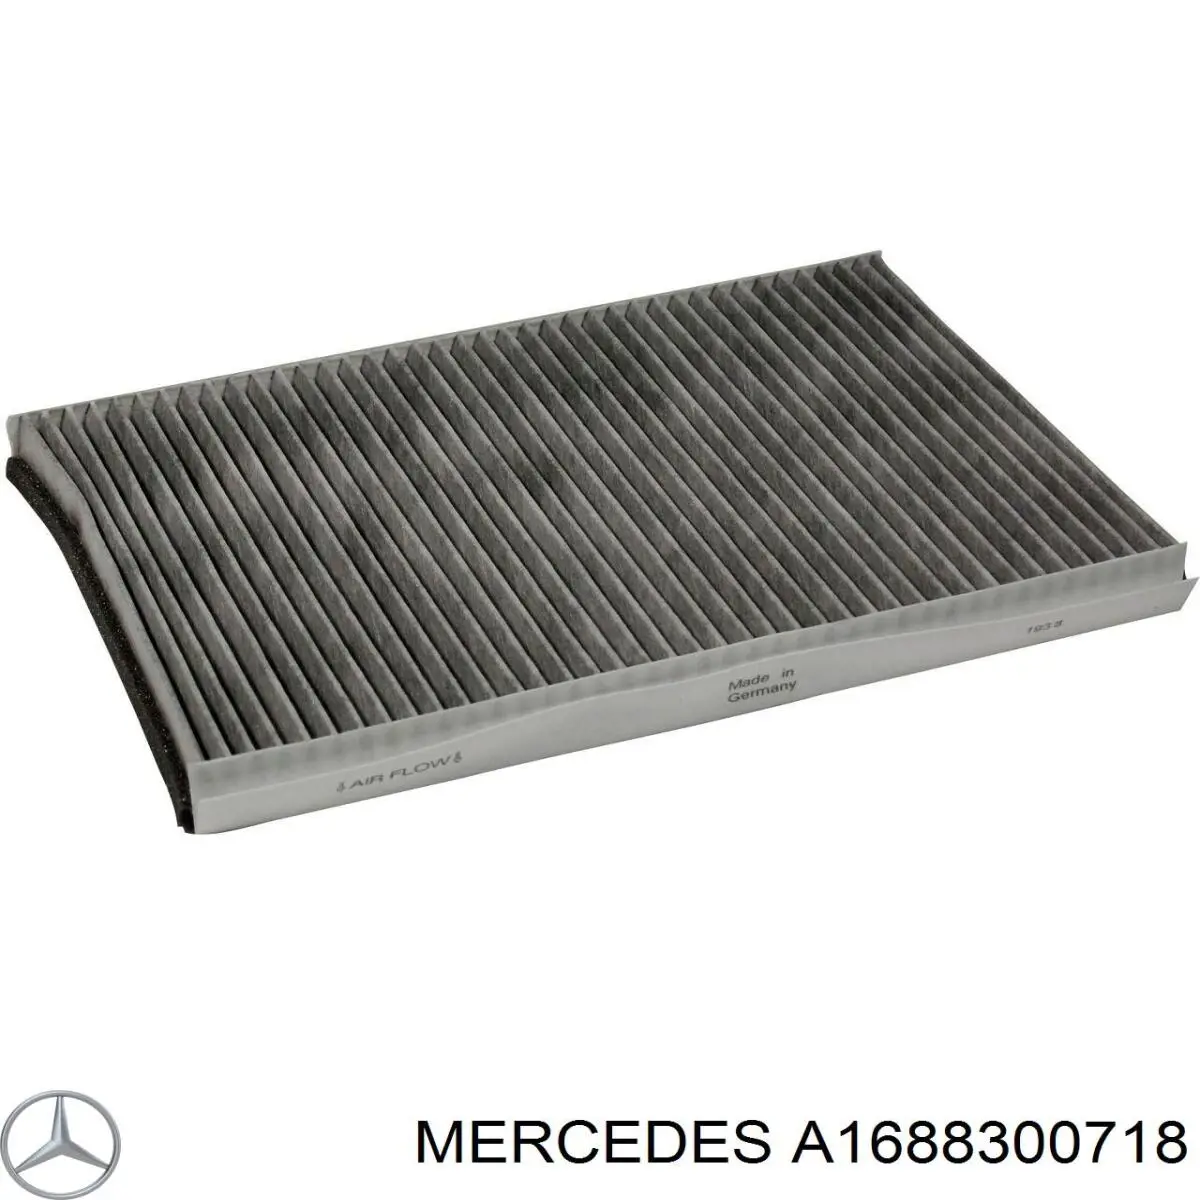 A1688300718 Mercedes filtro habitáculo